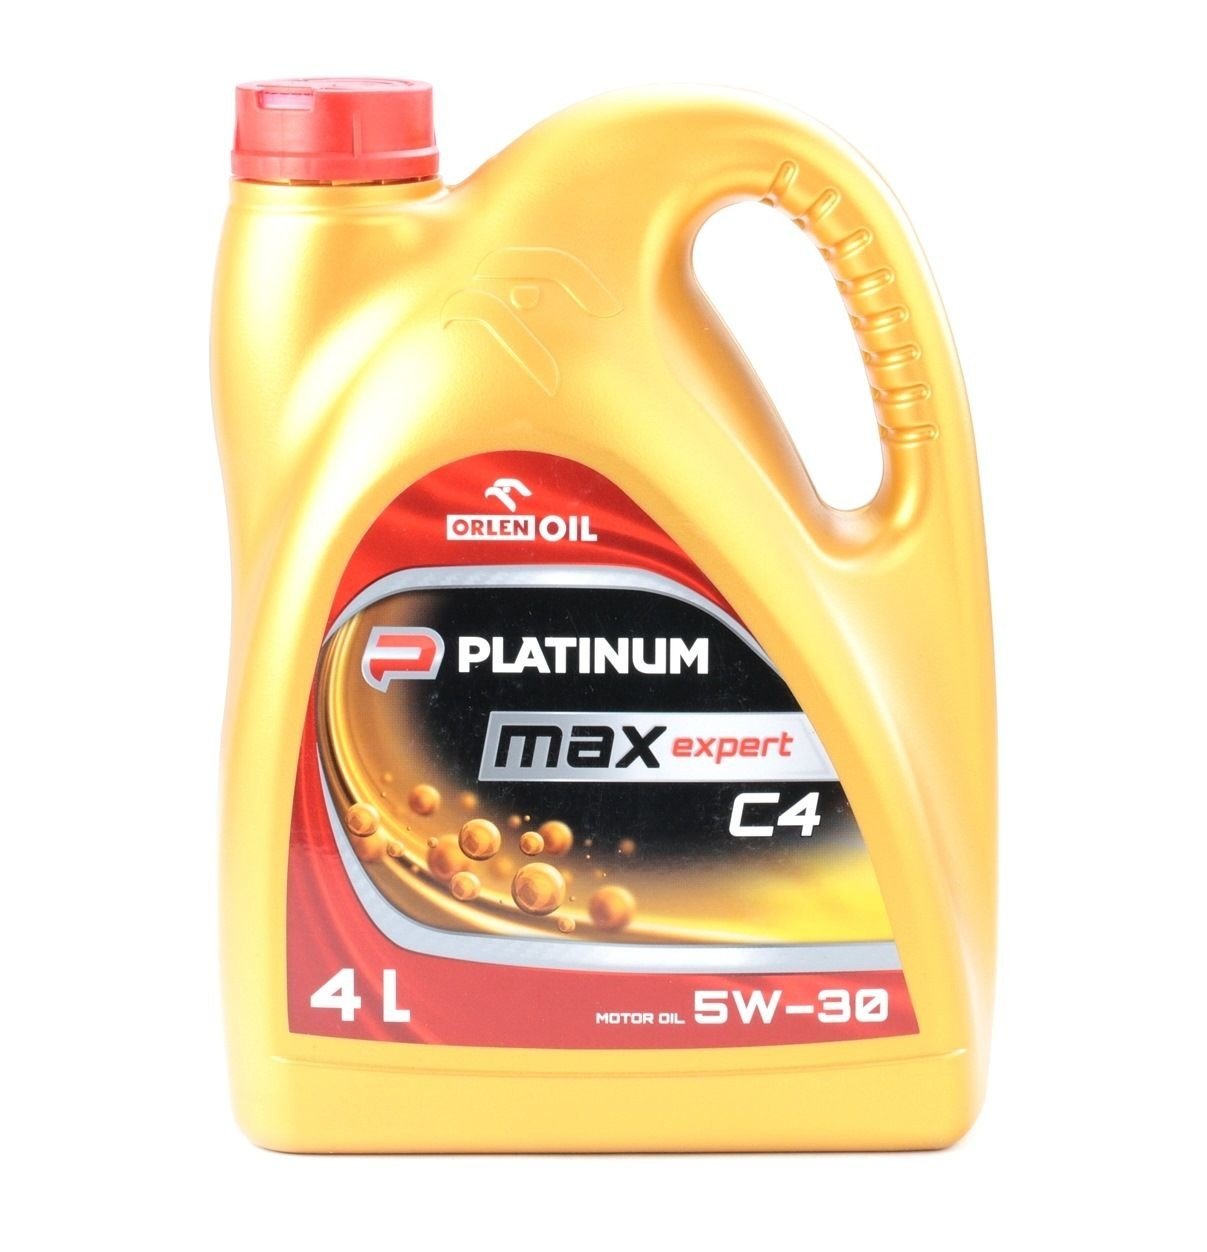 Orlen Oil Platinum Max Expert C4 5W-30 4L